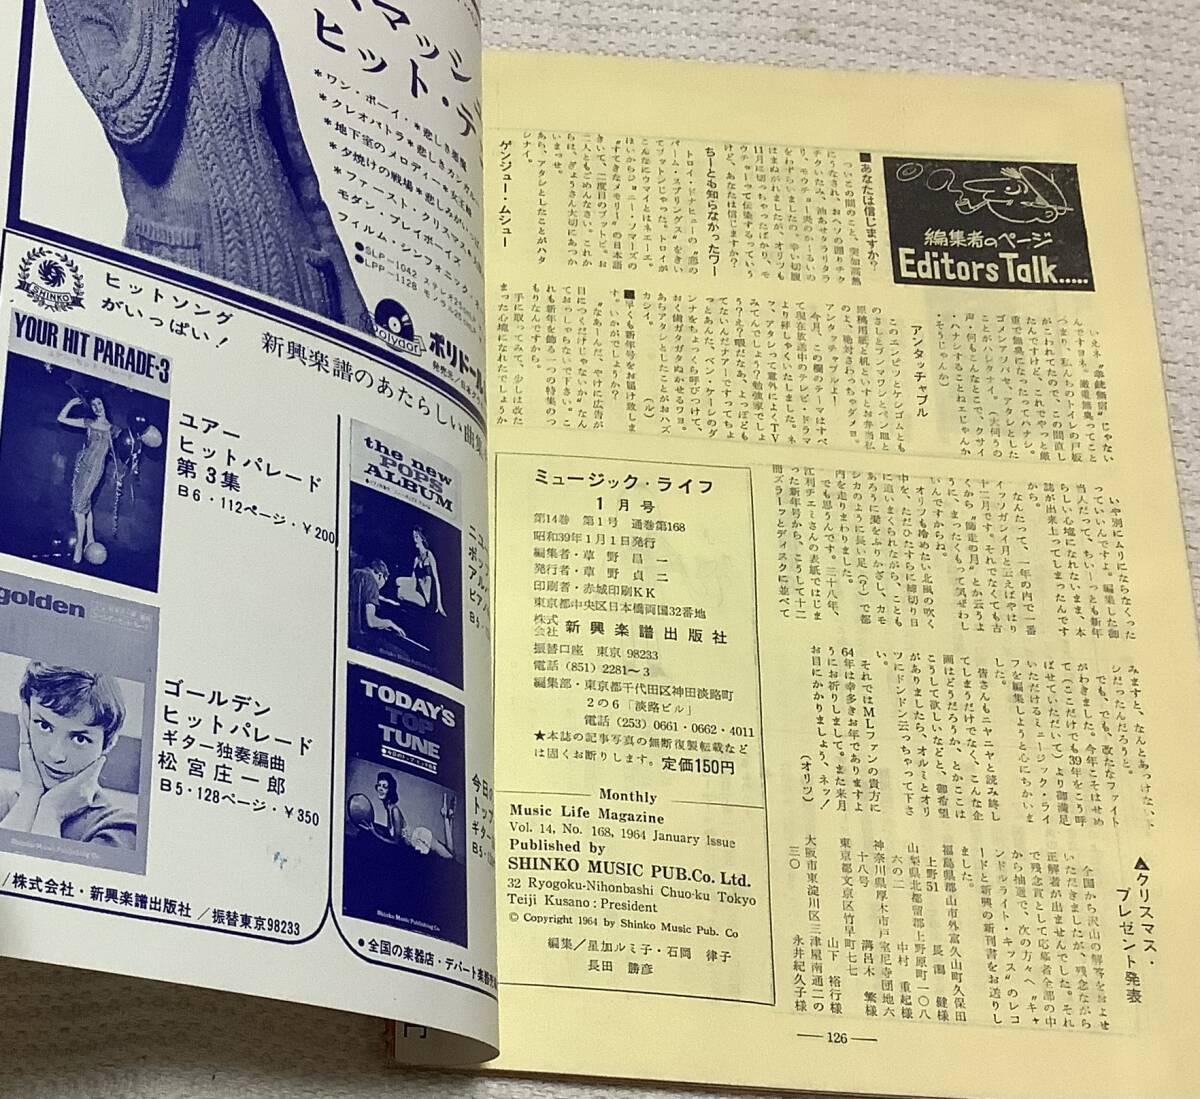 ポピュラー・ミュージックの雑誌 ミュージック・ライフ 1964年1月号 music life 昭和39 古本 雑誌 コニー・スティブンスの画像4